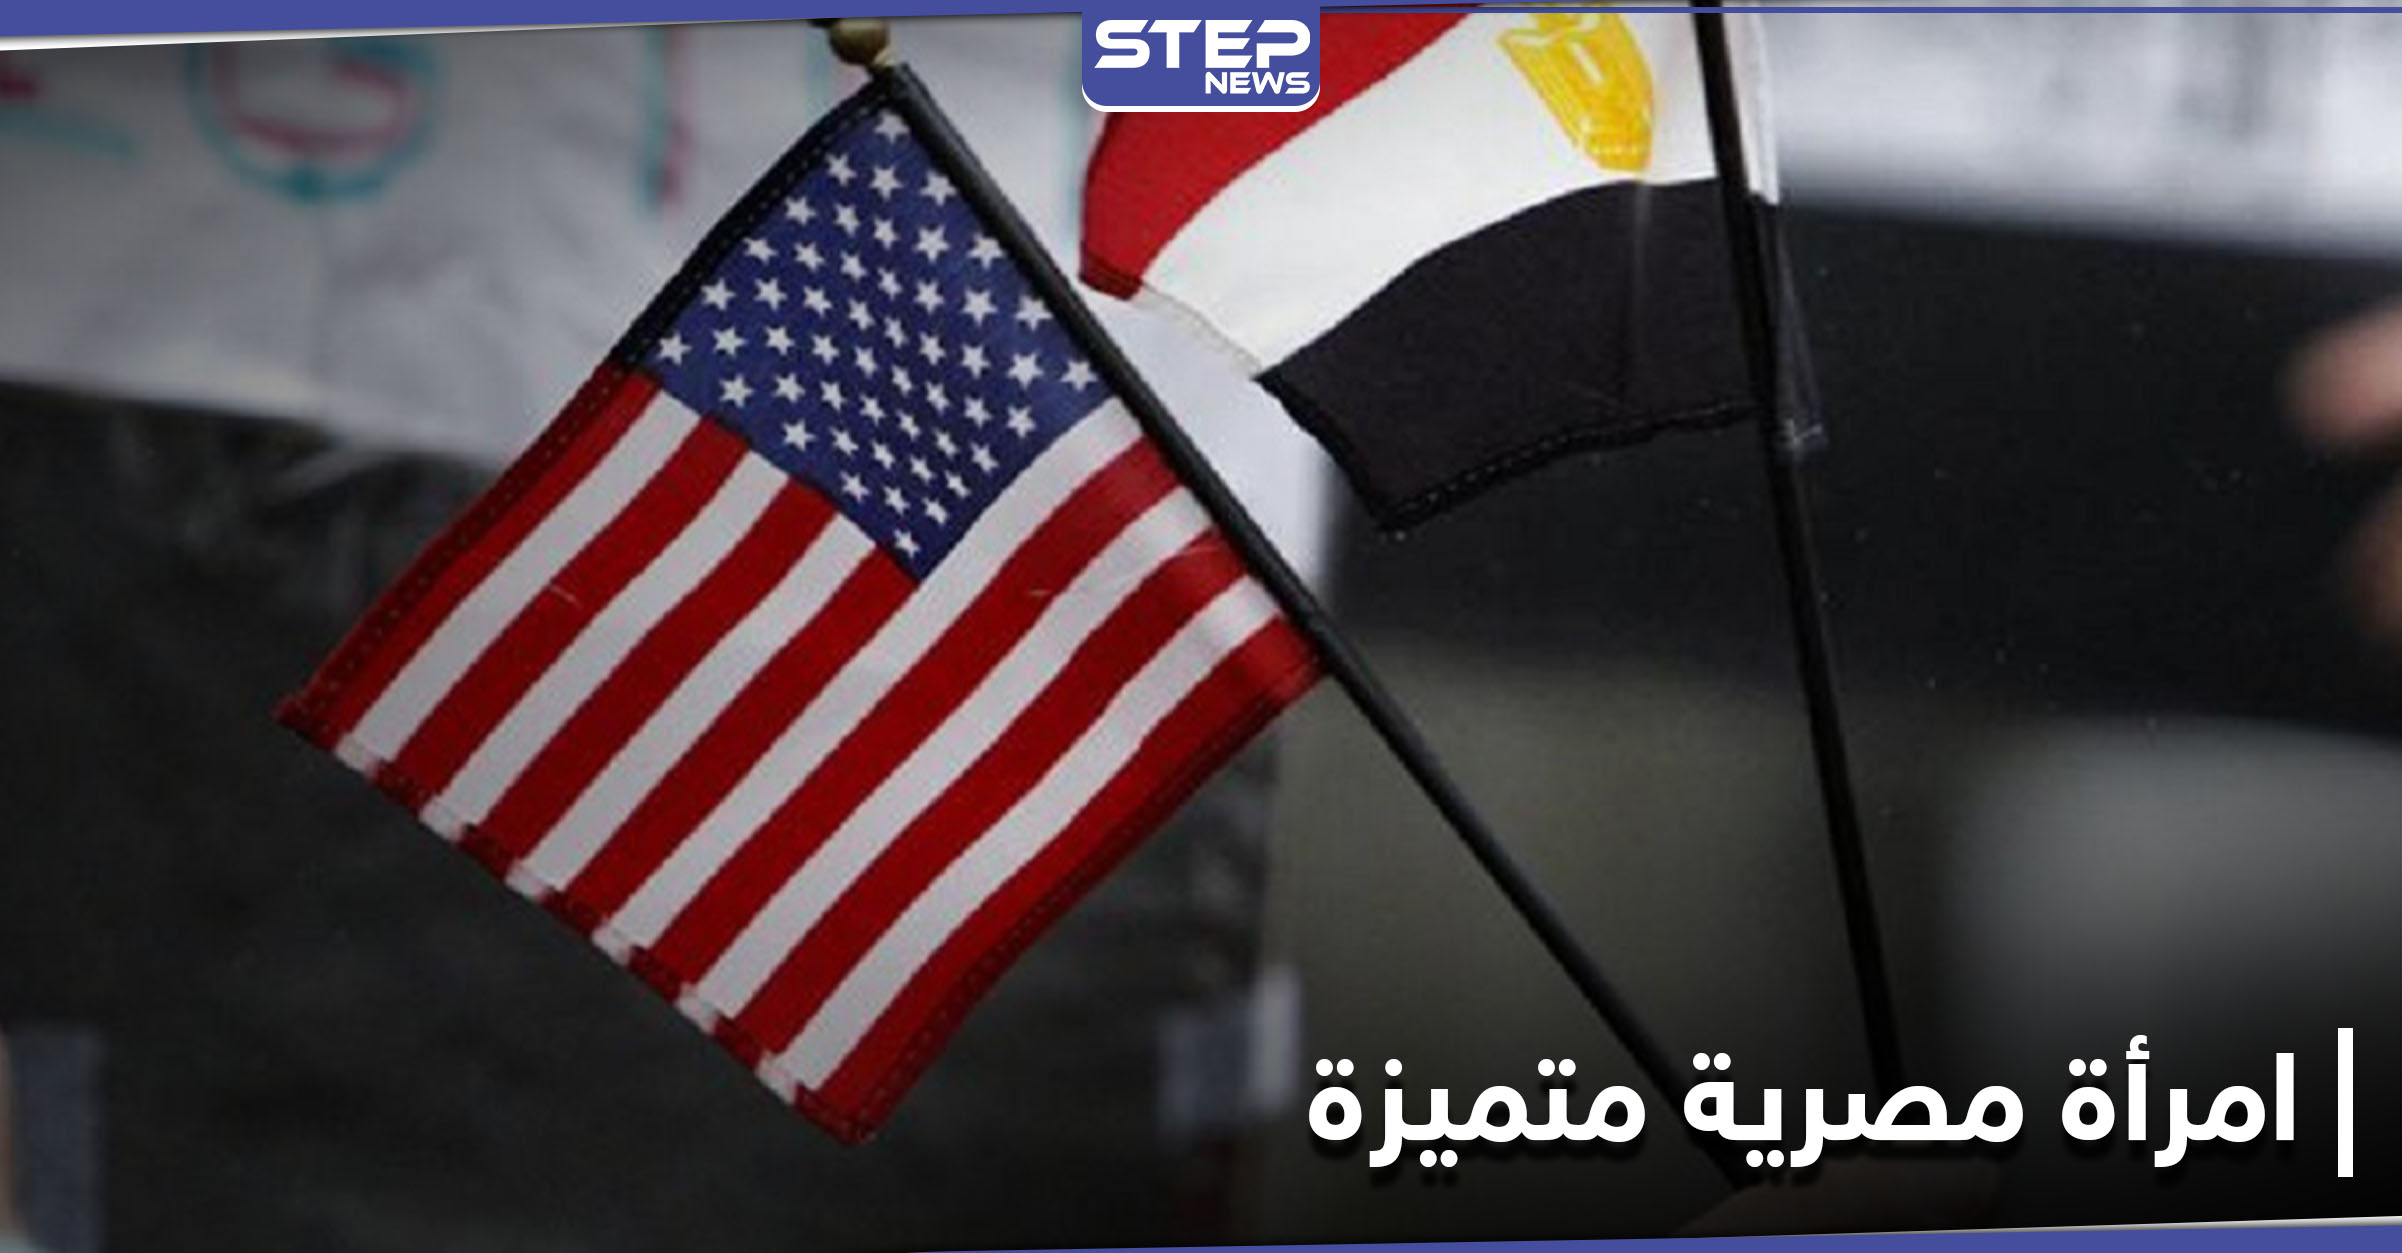 تكريم أول مصرية عمدة لولاية أمريكية